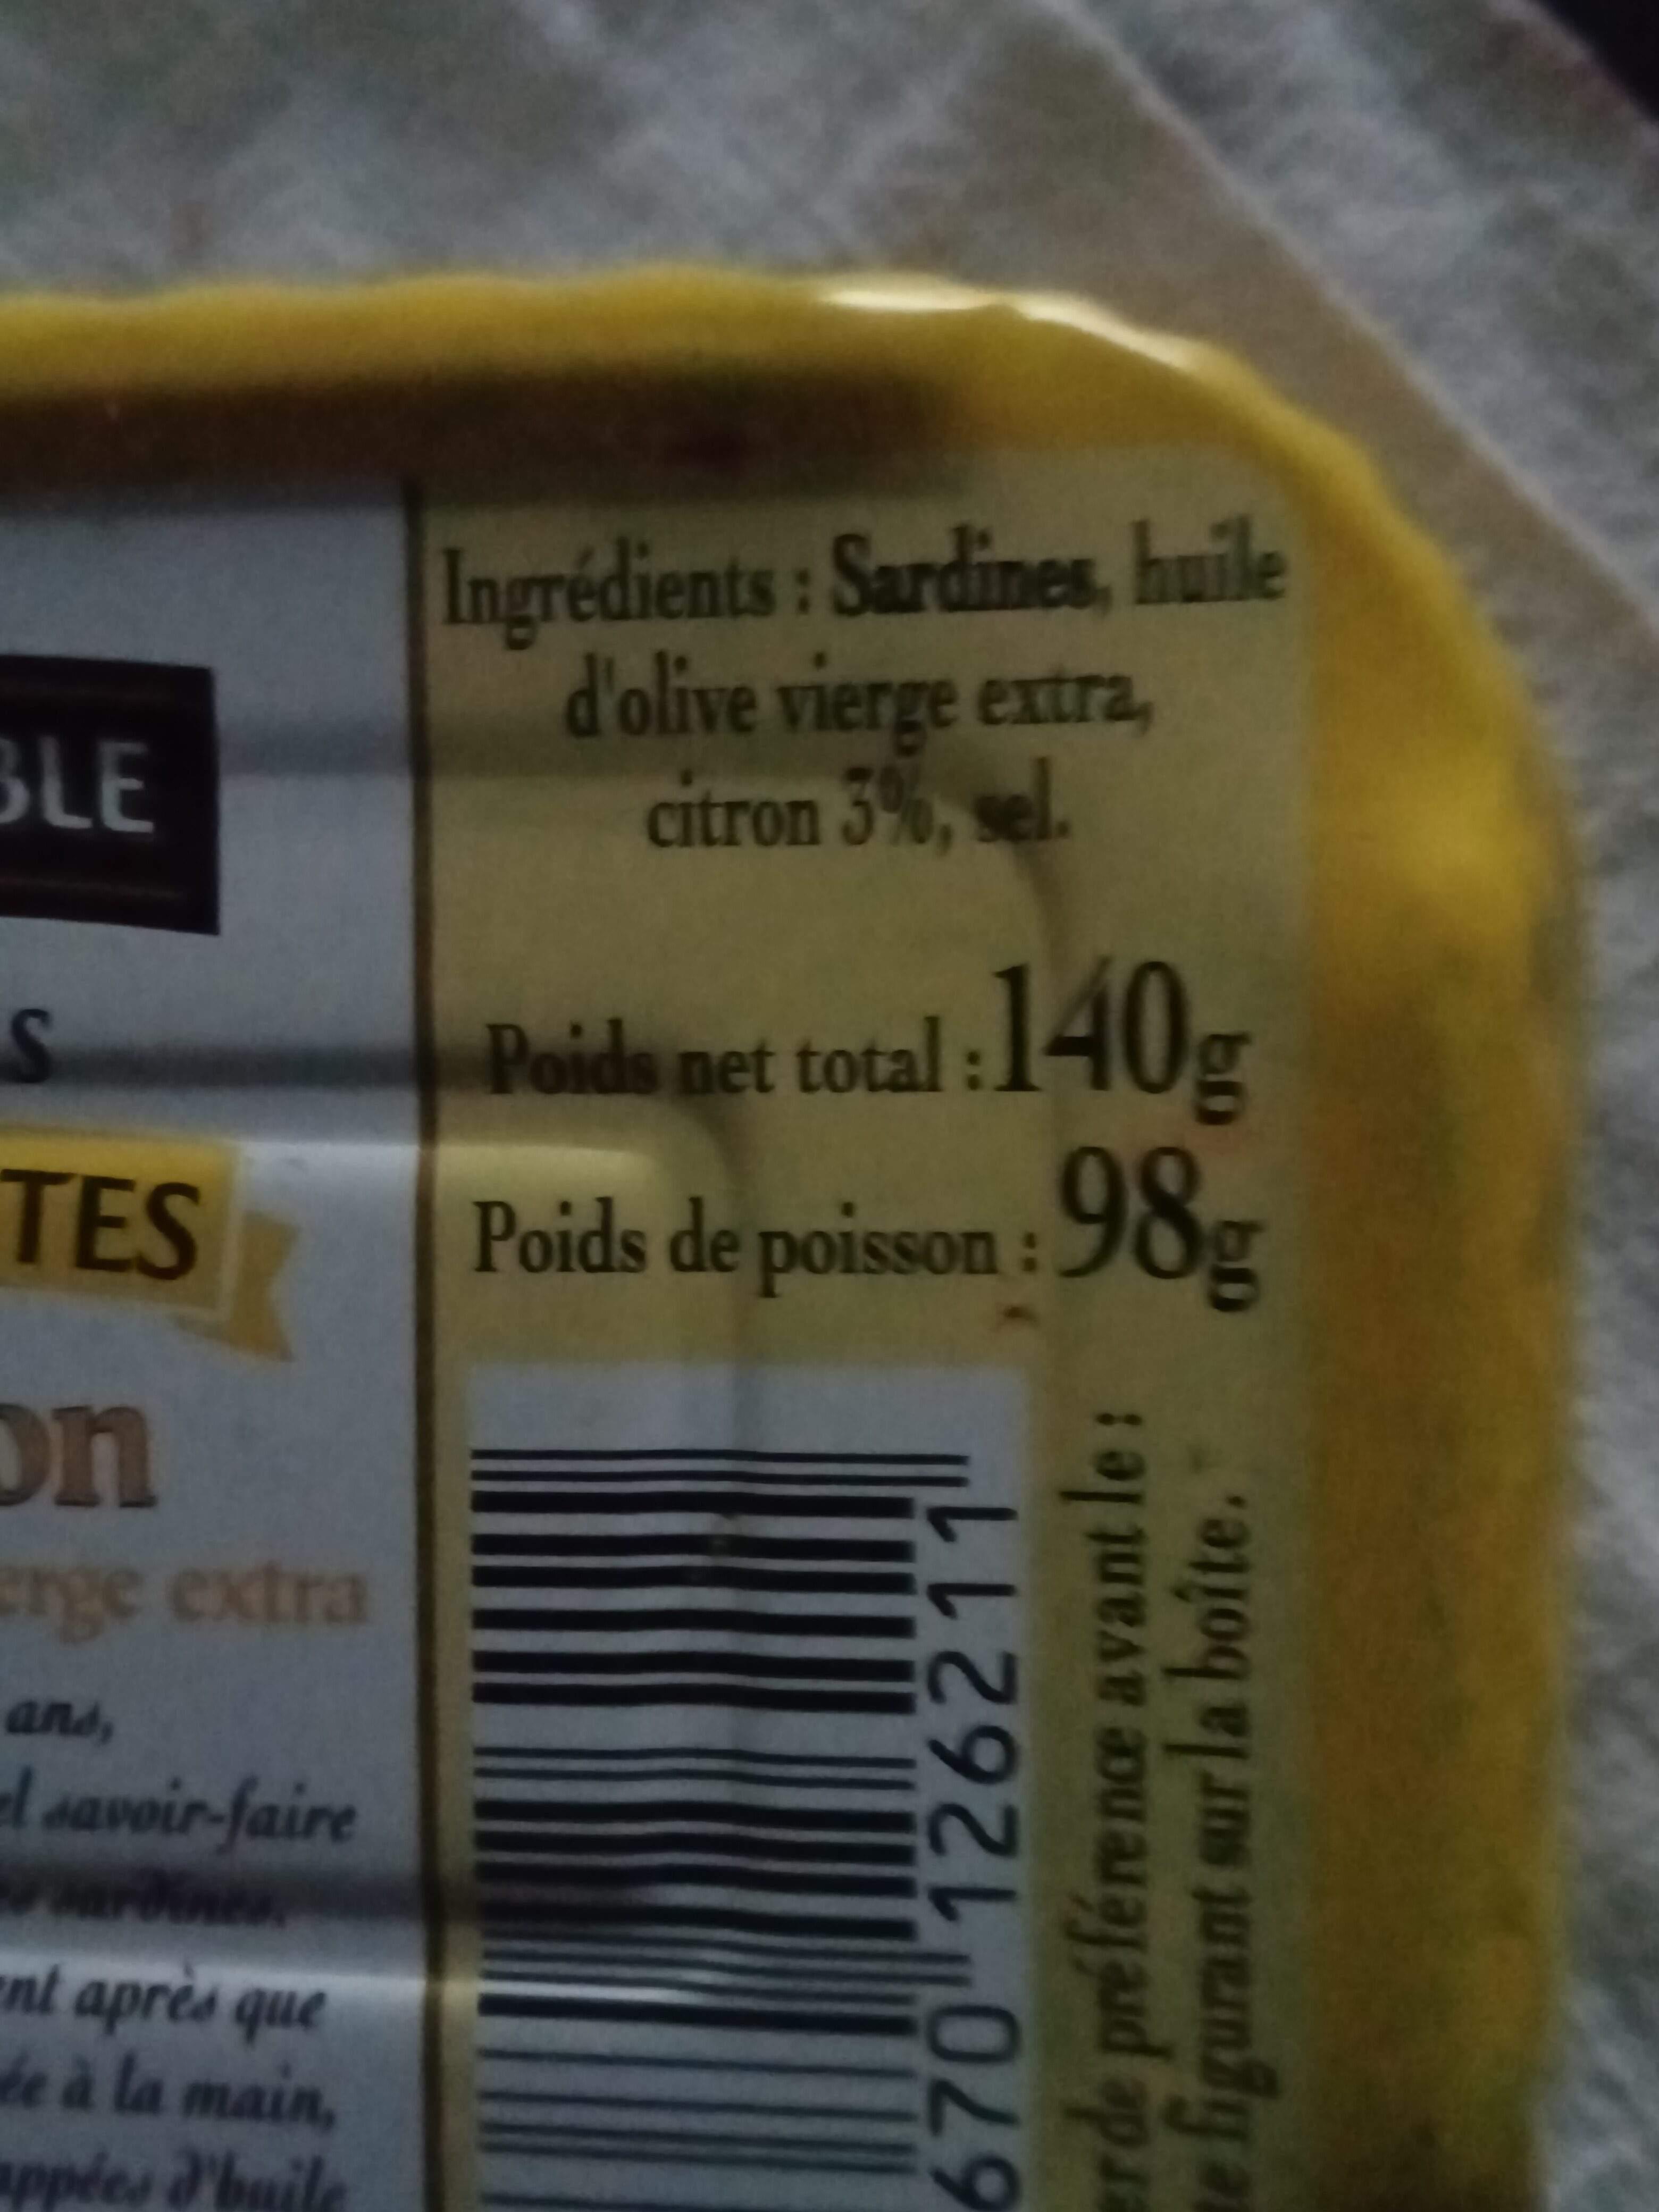 Sardines sans arêtes au citron et à l'huile d'olive vierge extra - Tableau nutritionnel